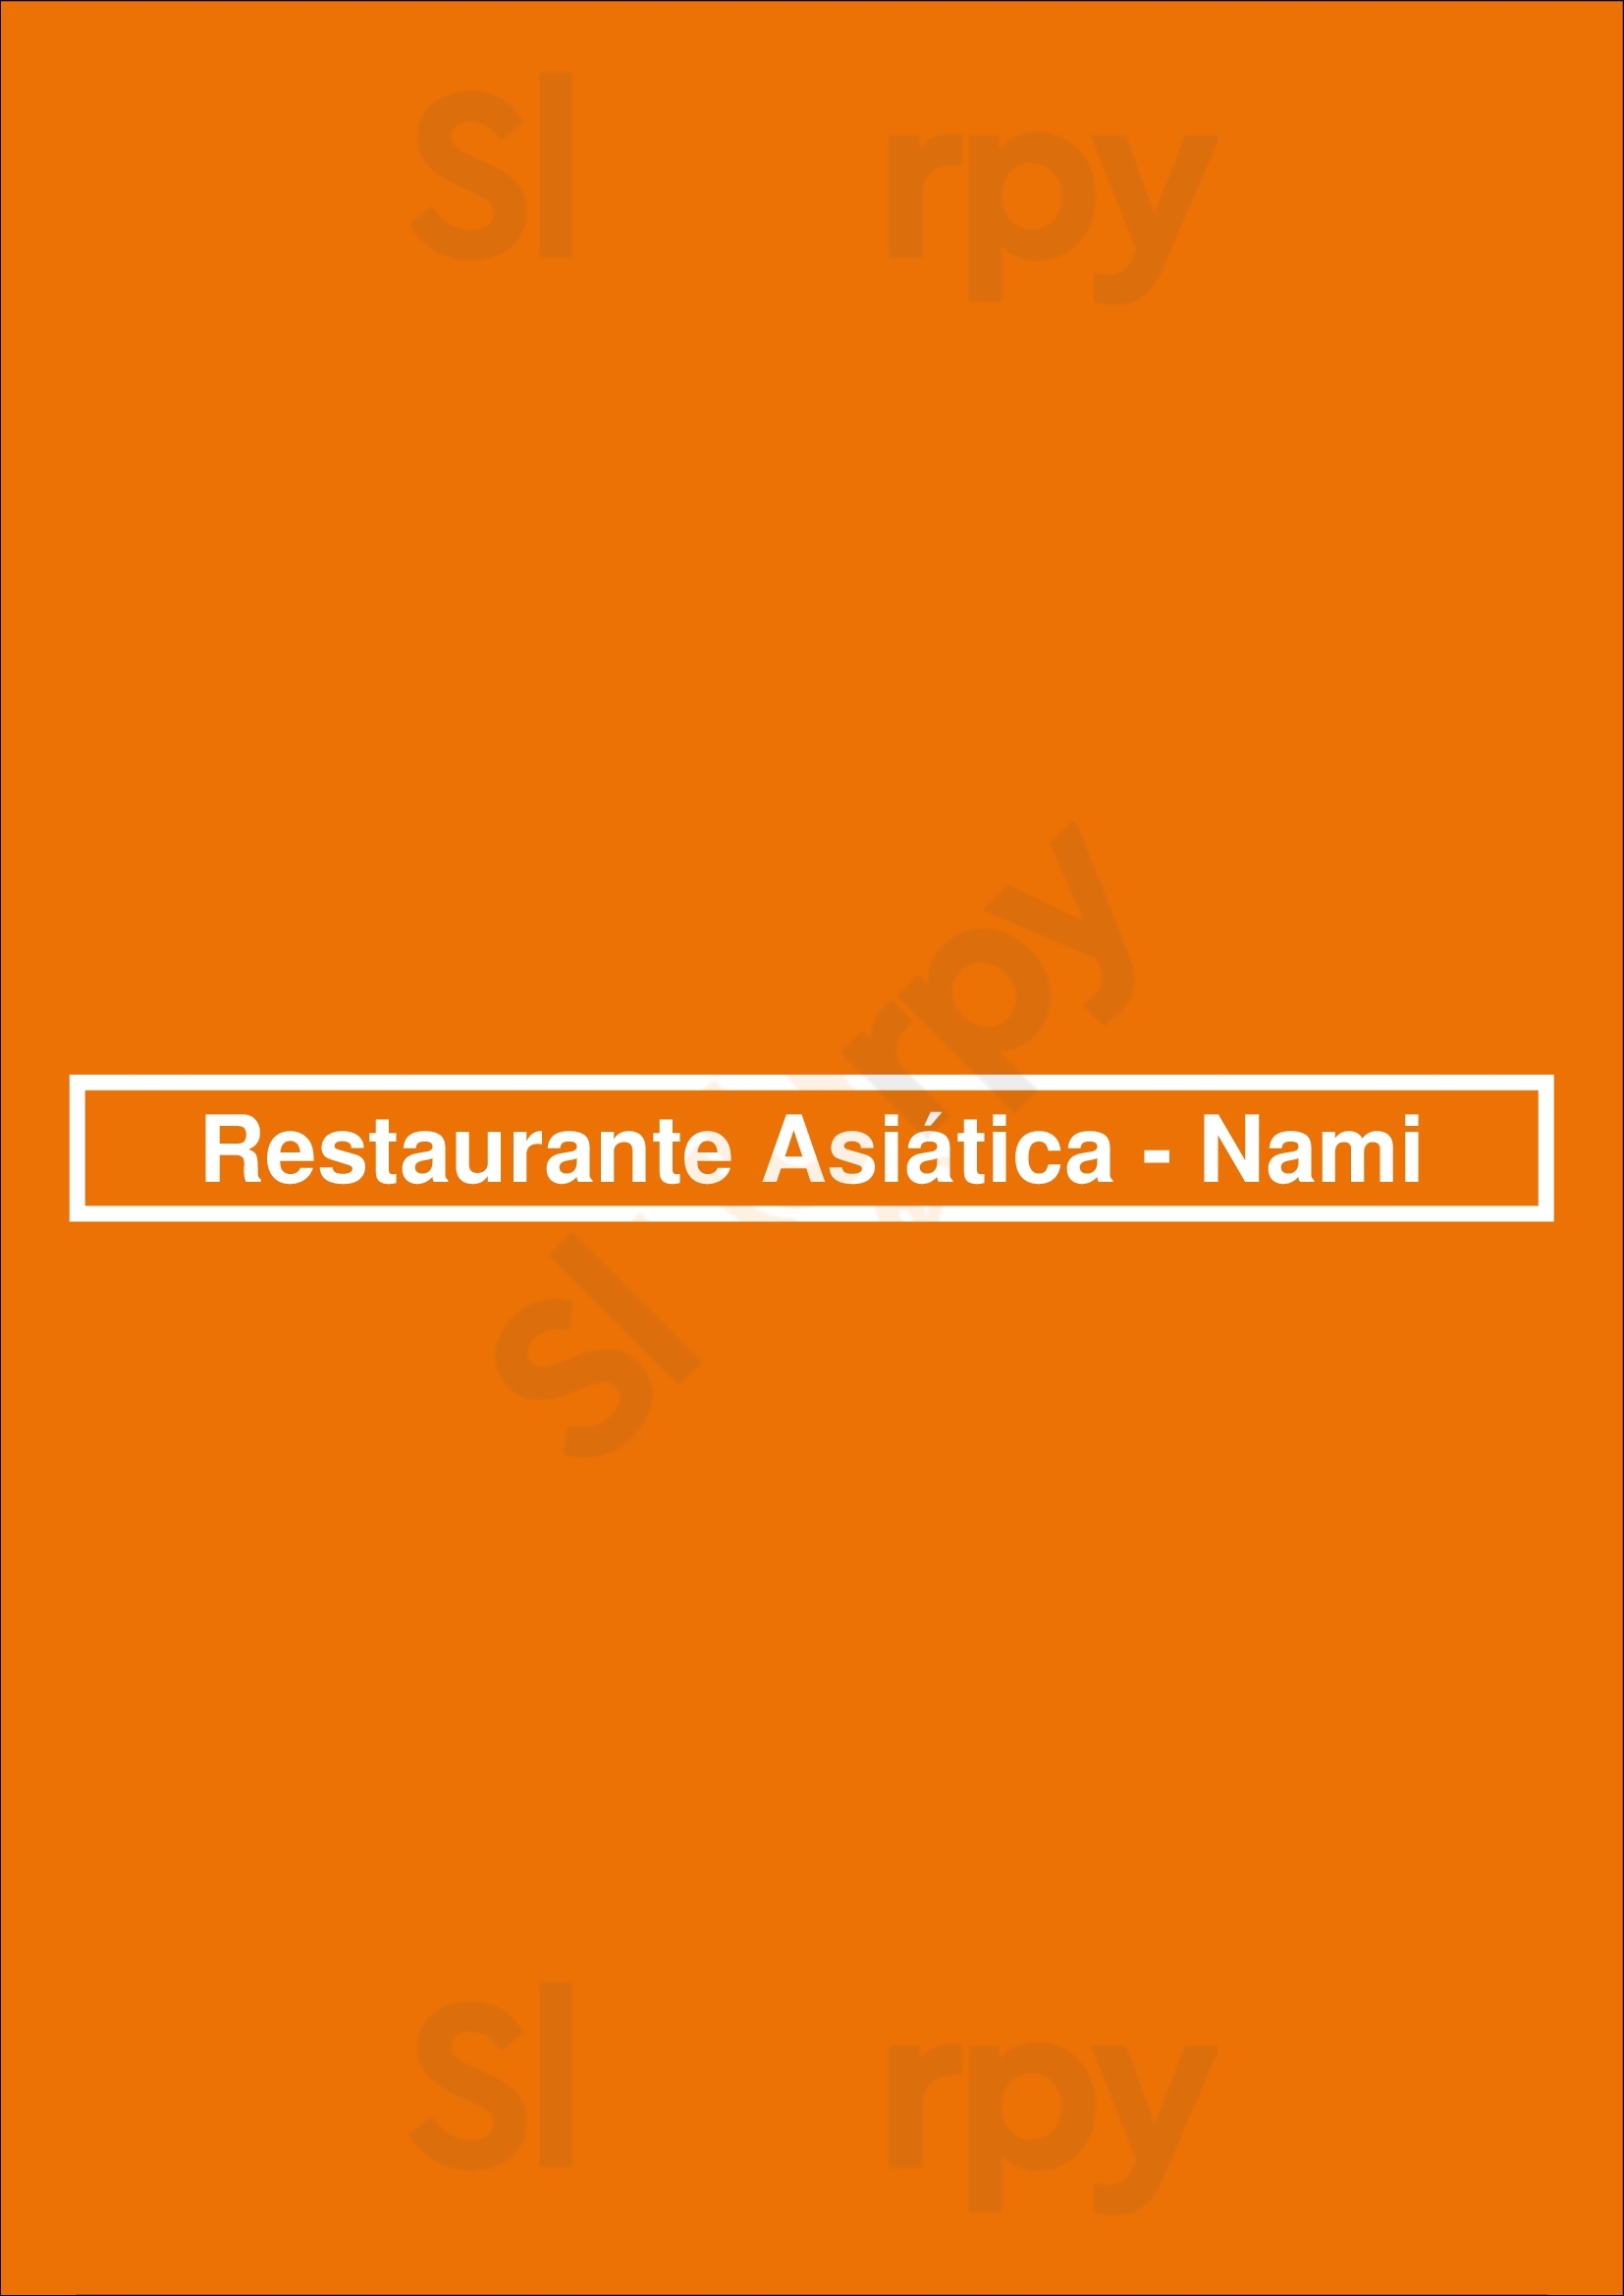 Restaurante Asiática - Nami Cascais Menu - 1